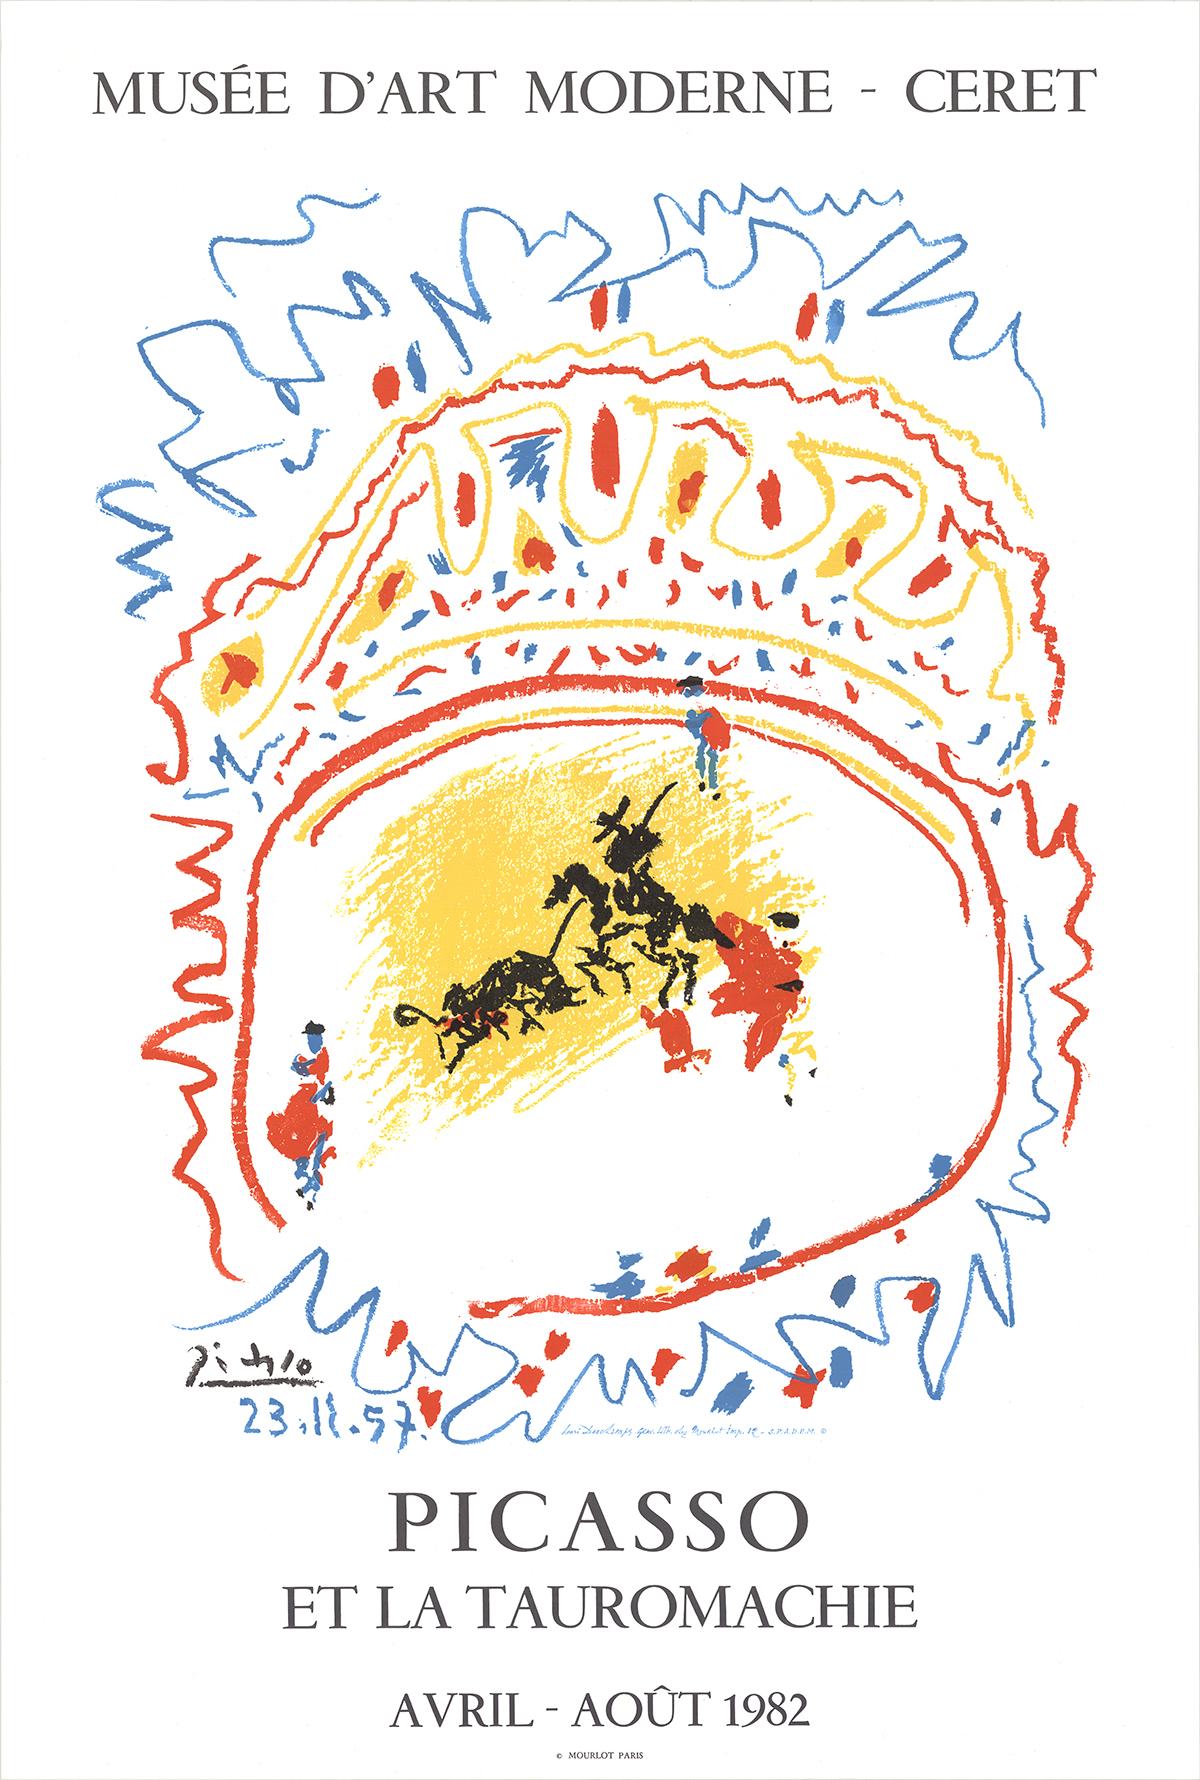 Papierformat: 35 x 23,5 Zoll (88,9 x 59,69 cm)
Bildgröße: 26 x 21 Zoll (66,04 x 53,34 cm)
Gerahmt: Nein
Zustand: A: Neuwertig

Zusätzliche Details: Farblithografie nach (d'apres) Picasso, 1982 von Henri Deschamps auf den Pressen von Mourlot in Paris